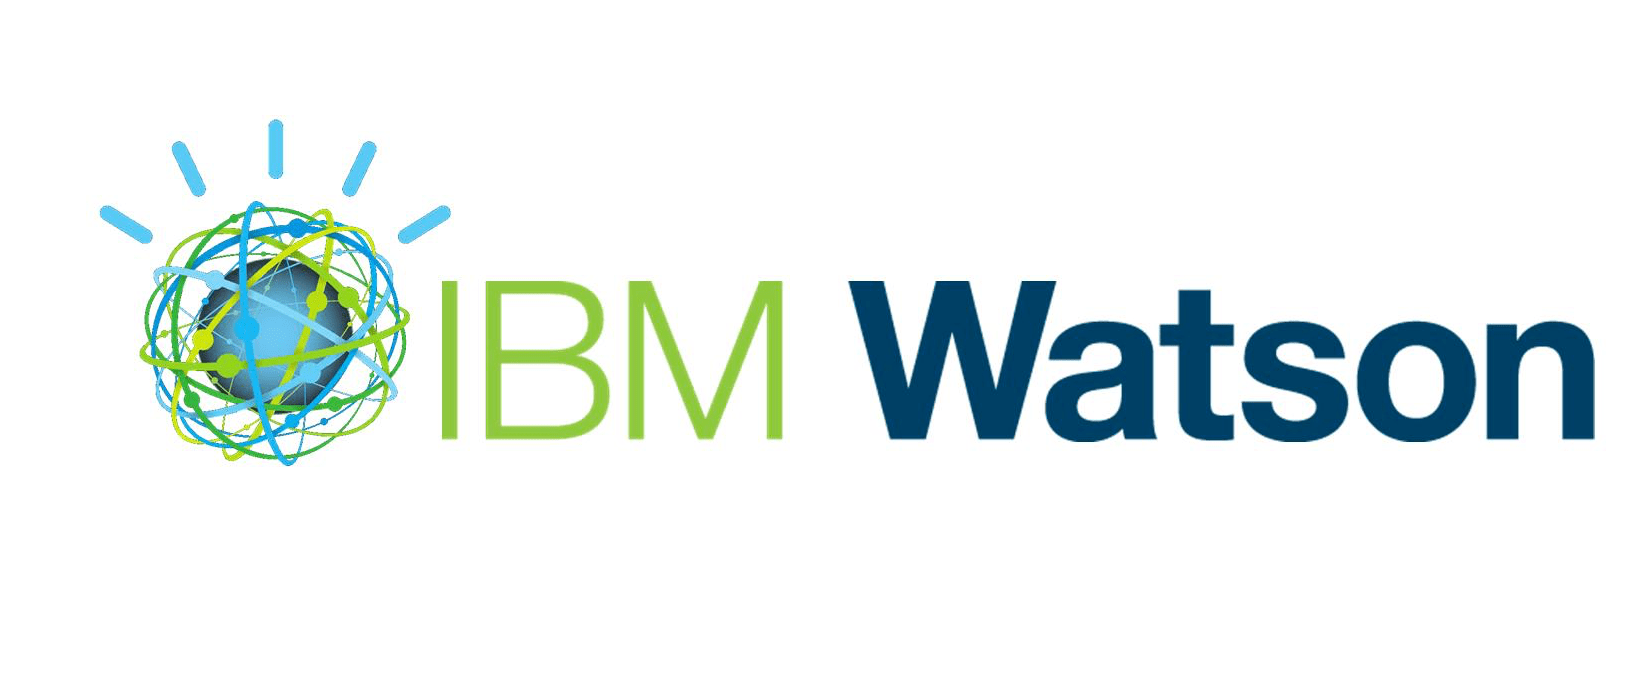 Official IBM Watson Logo - IBM Watson Logo